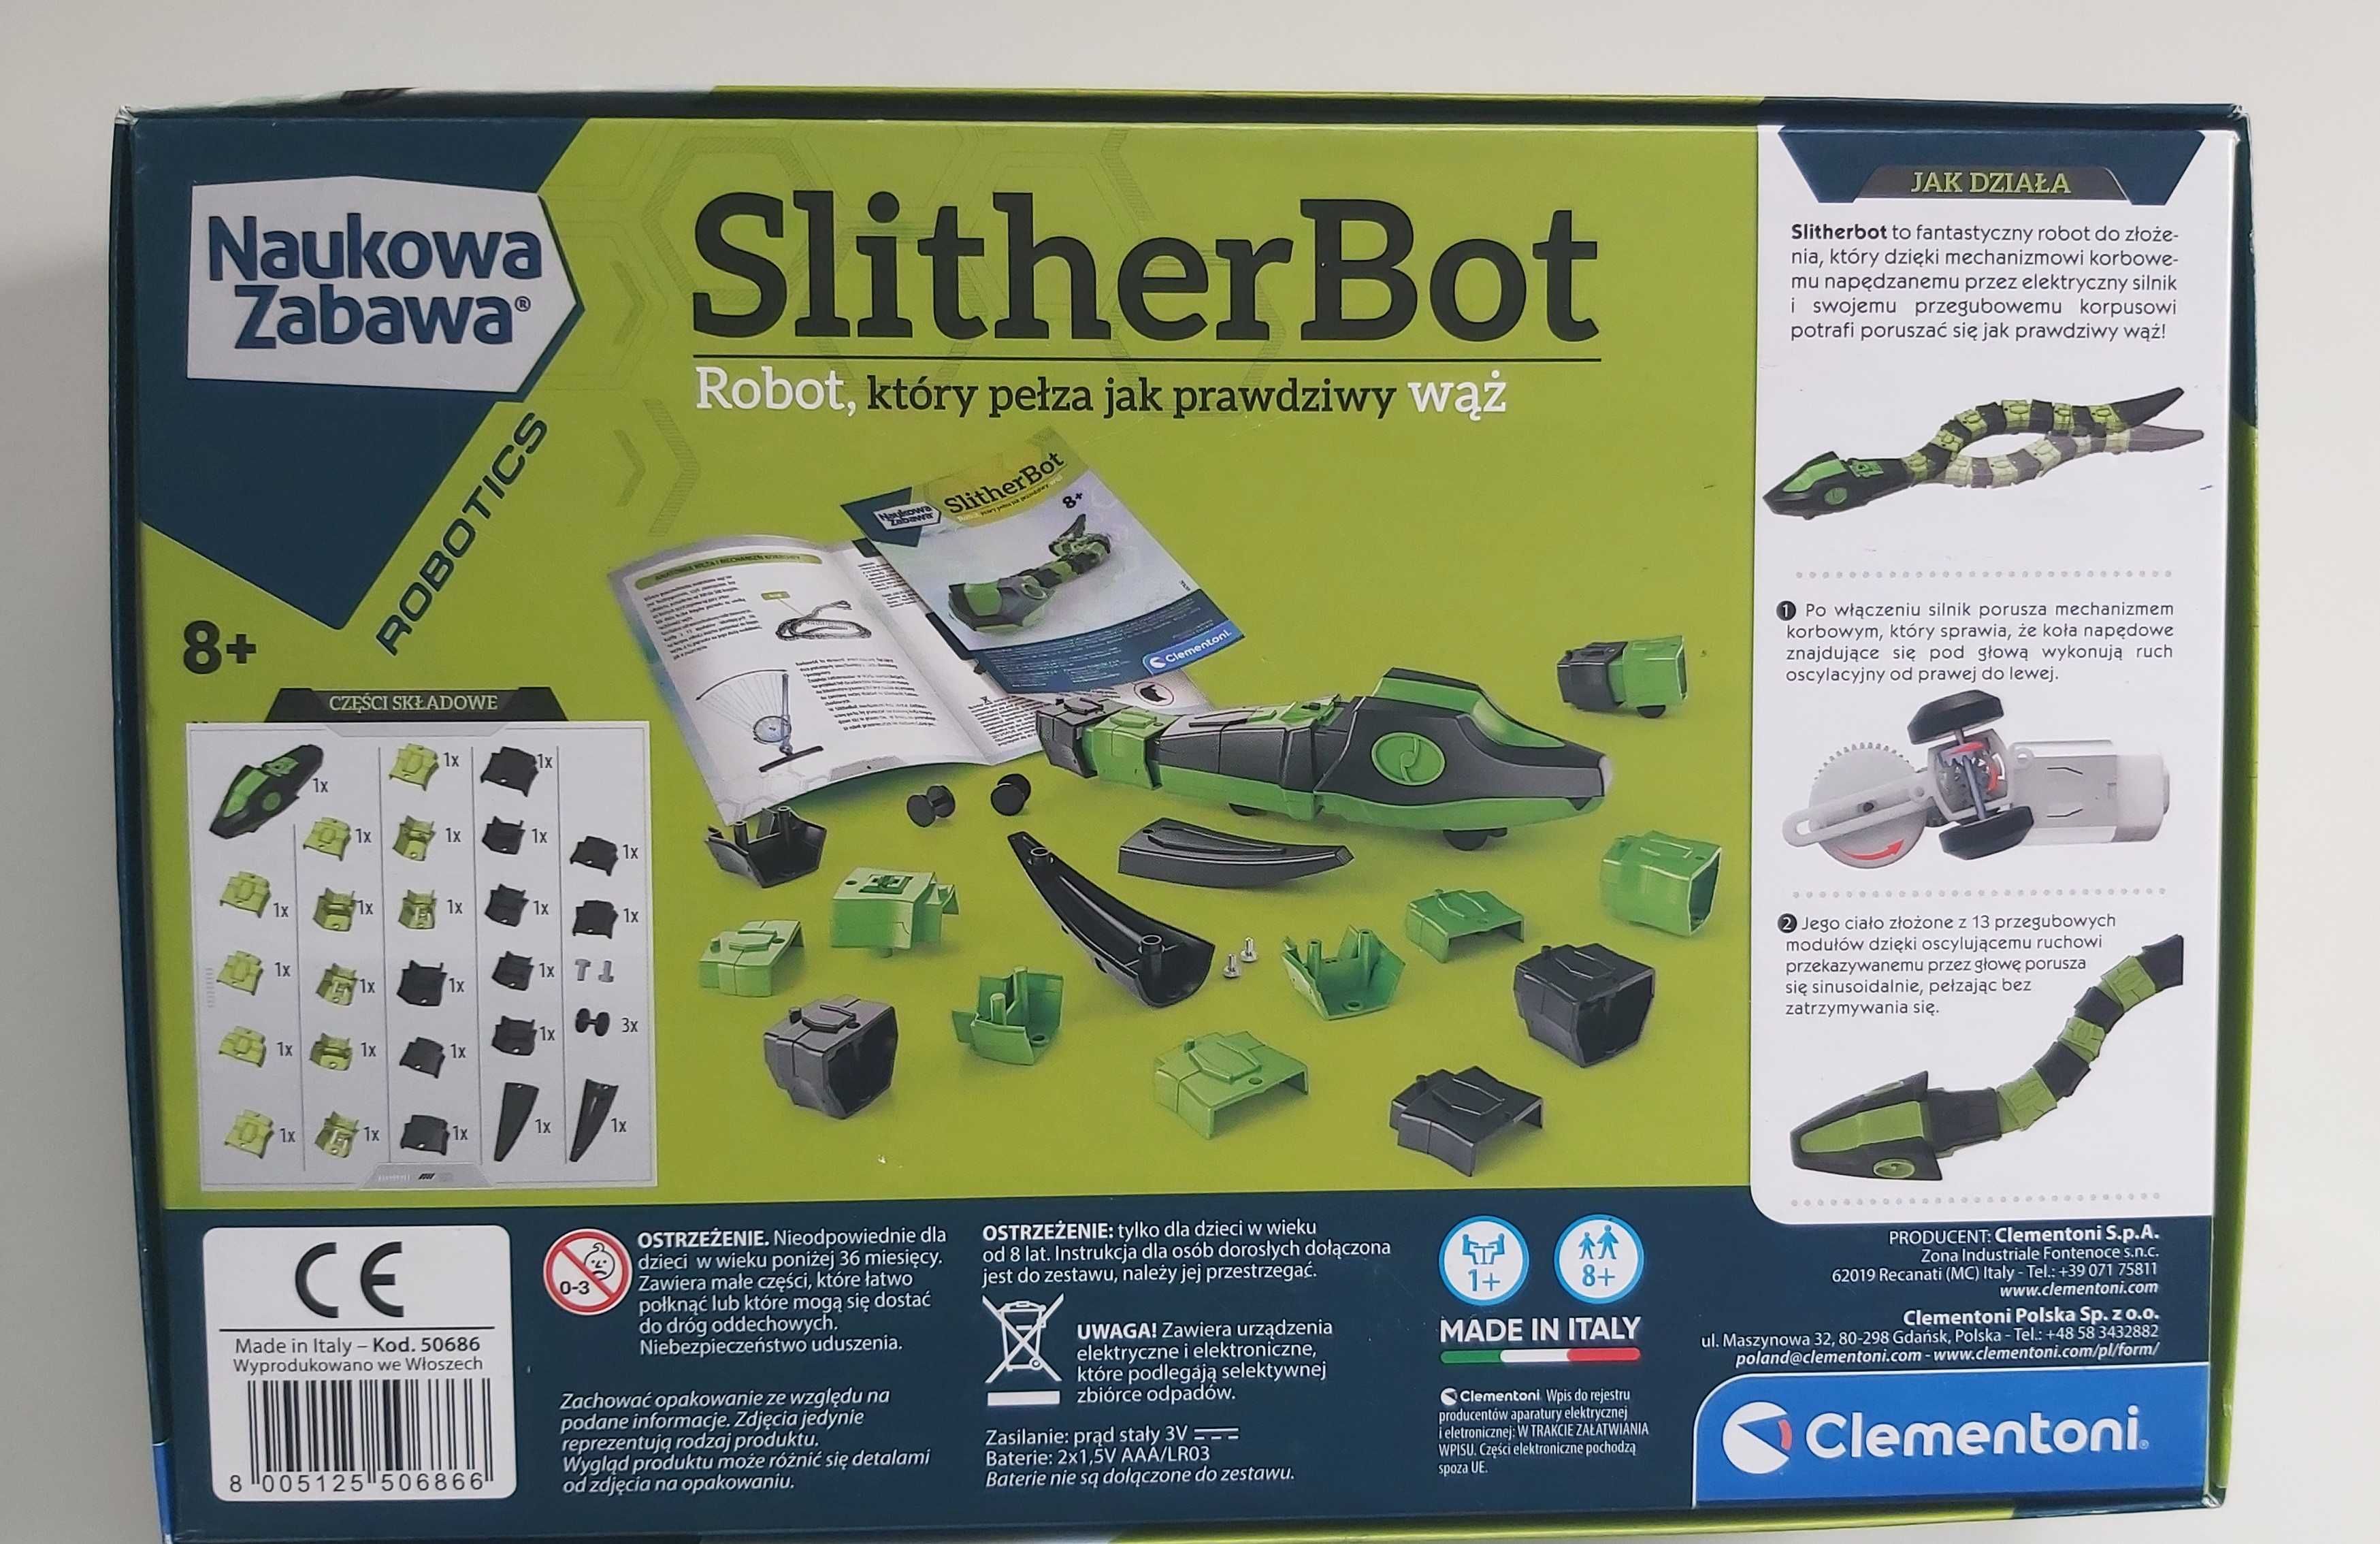 SlitherBot- Pełzający wąż robot NAUKOWA ZABAWA